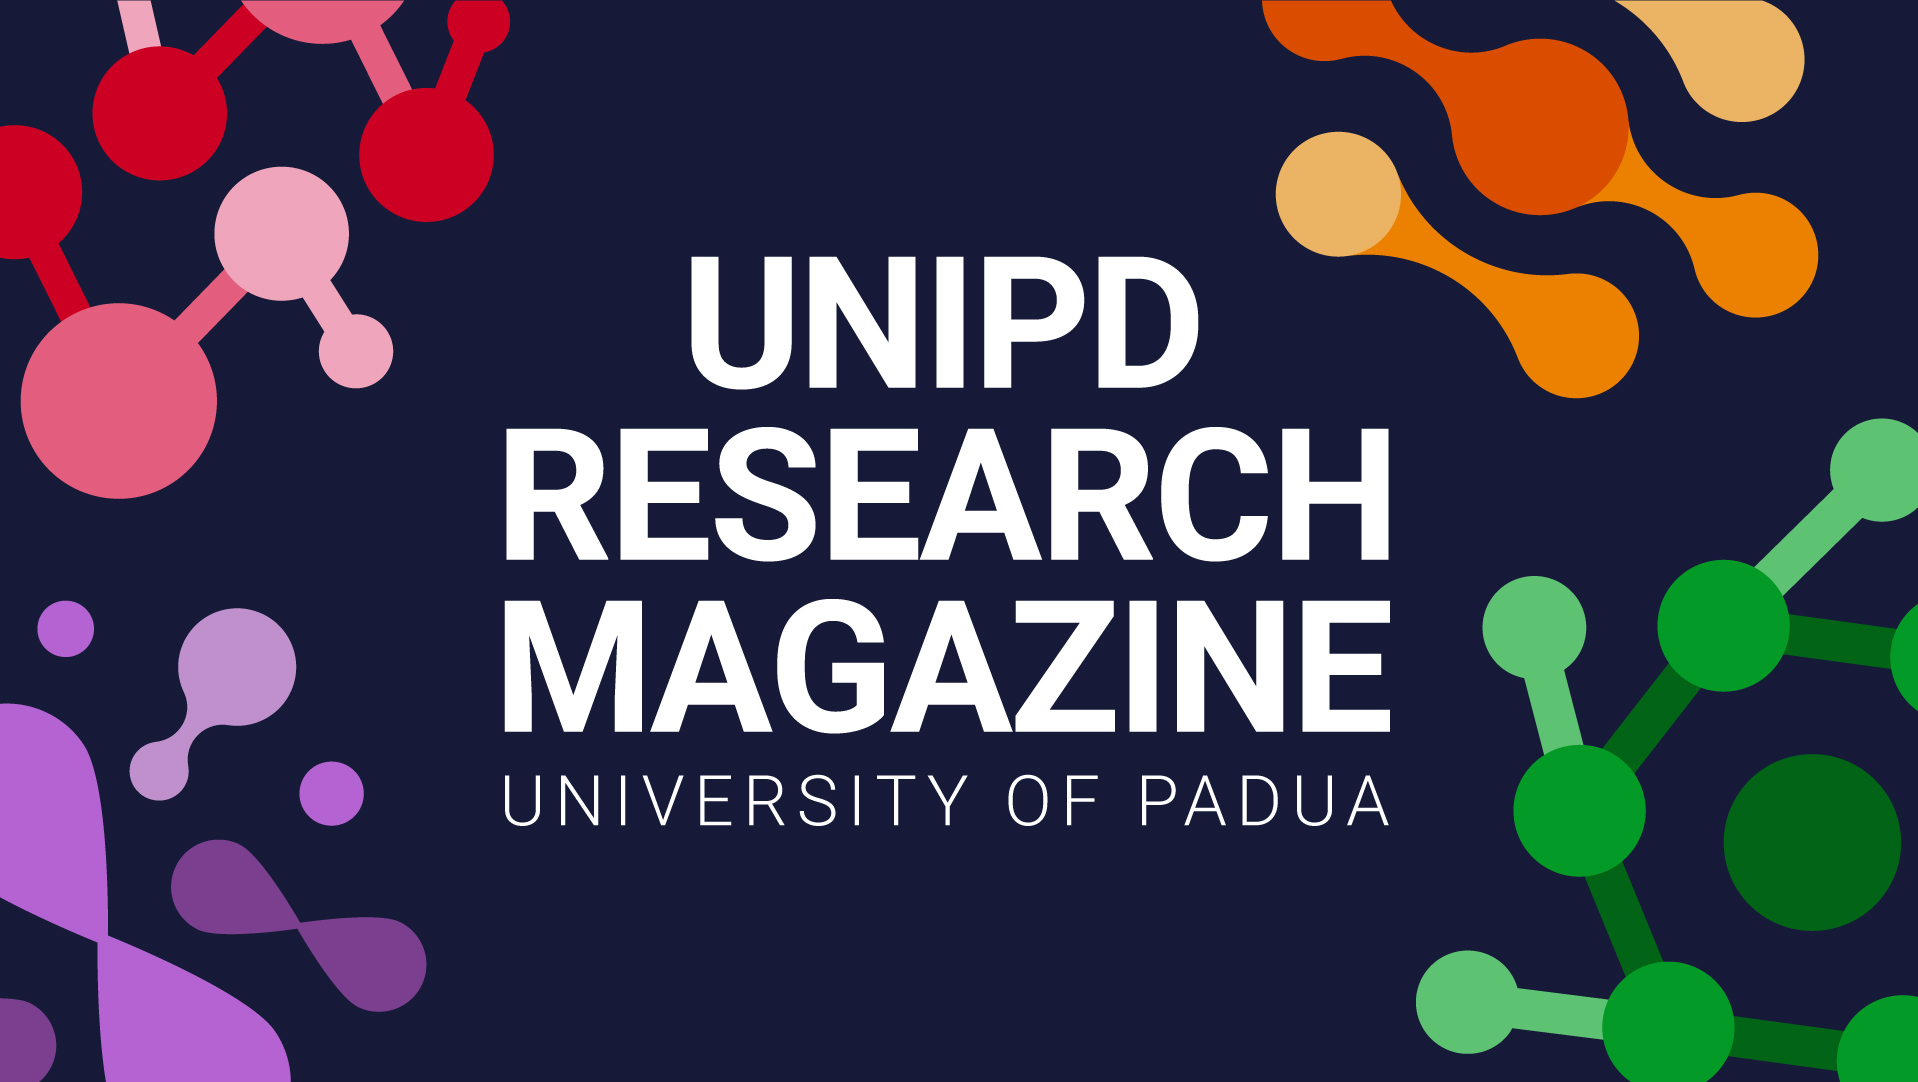 Unipd Research Magazine - University of Padua